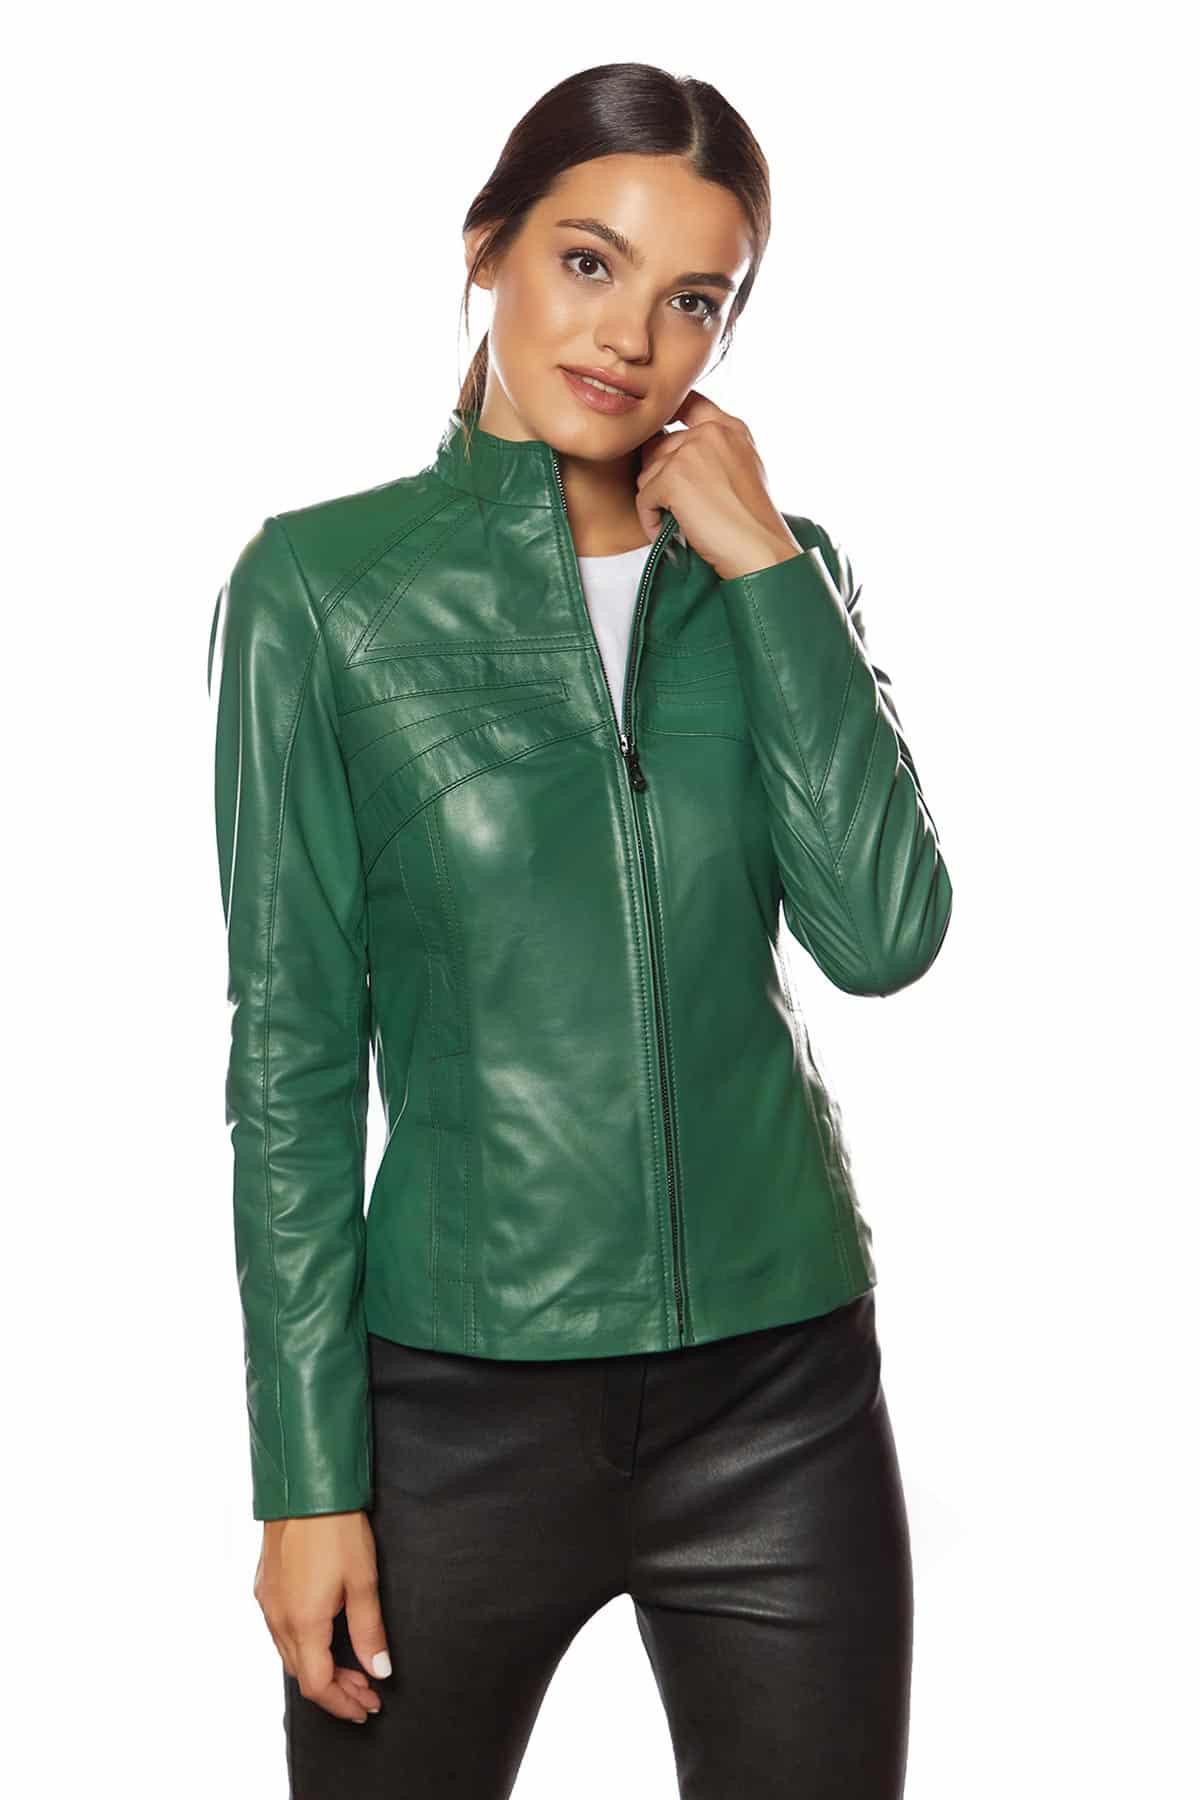 Women's Green Leather Biker Jacket - AU LeatherX